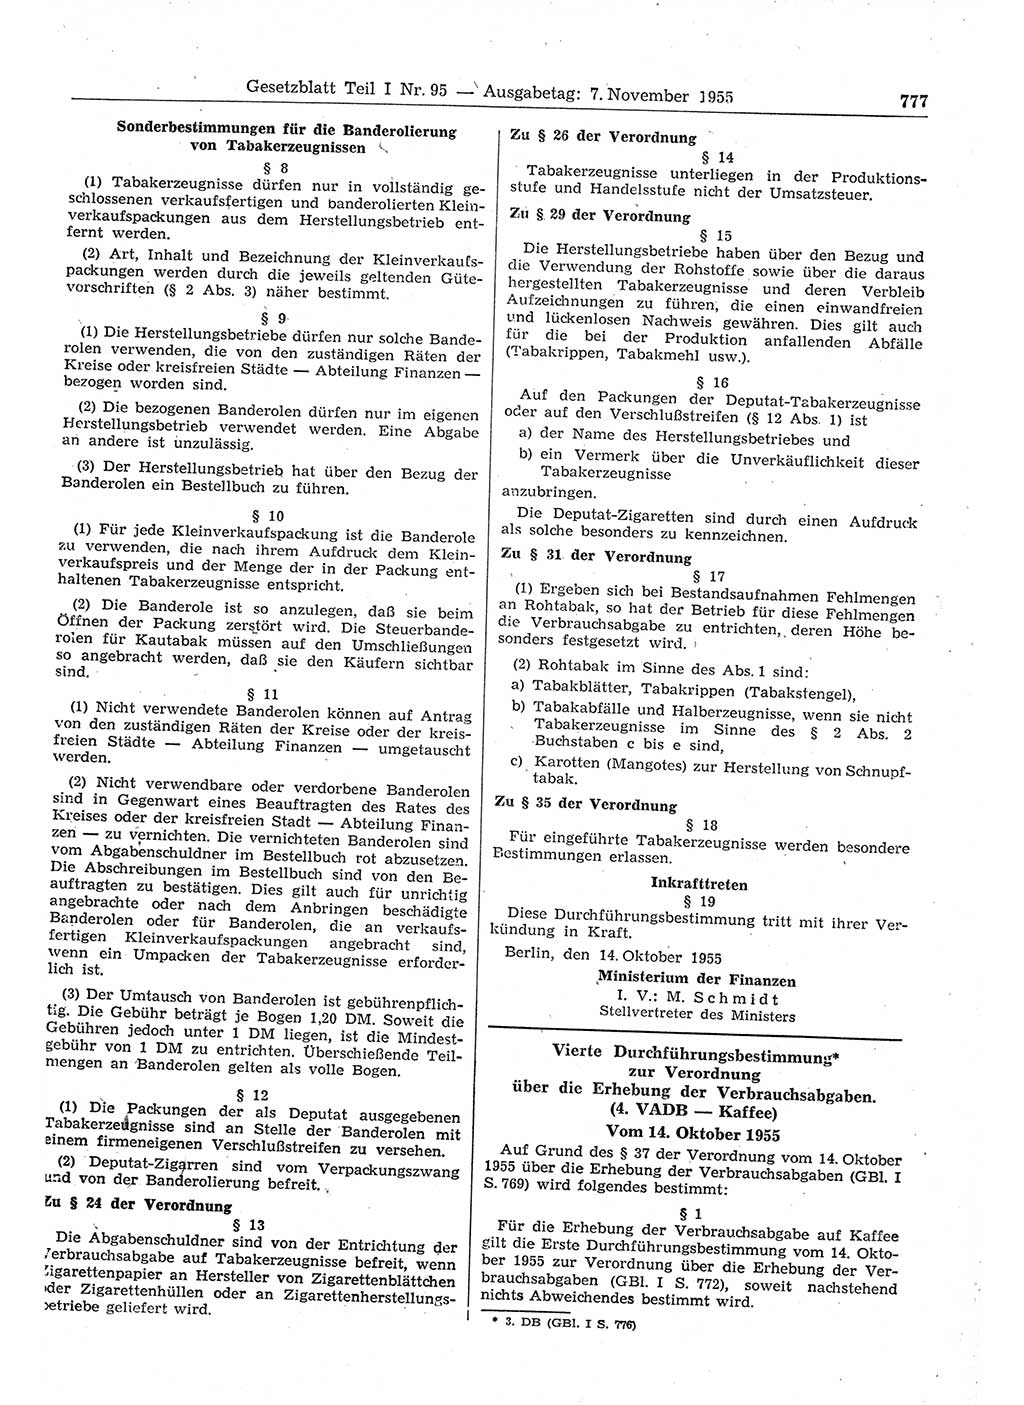 Gesetzblatt (GBl.) der Deutschen Demokratischen Republik (DDR) Teil Ⅰ 1955, Seite 777 (GBl. DDR Ⅰ 1955, S. 777)